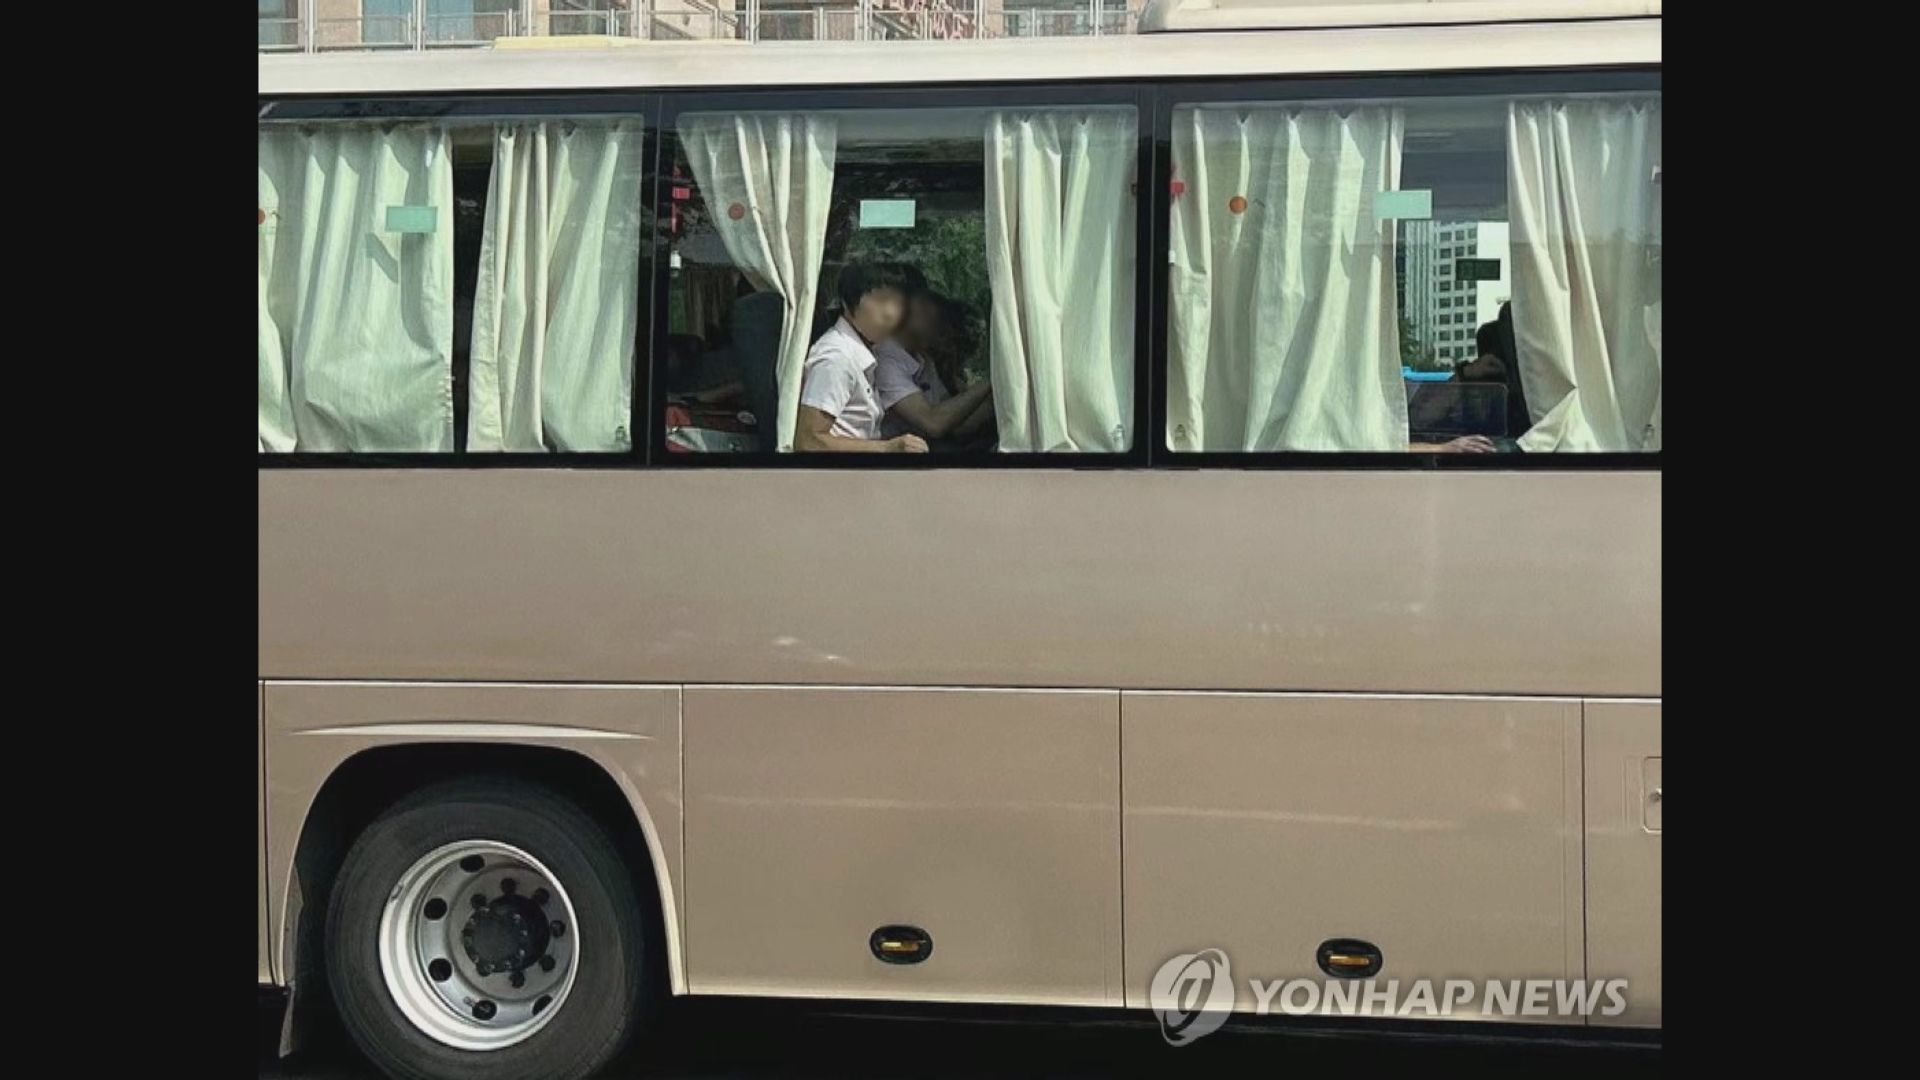 北韓跆拳道運動員抵達北京 將到哈薩克參加世錦賽